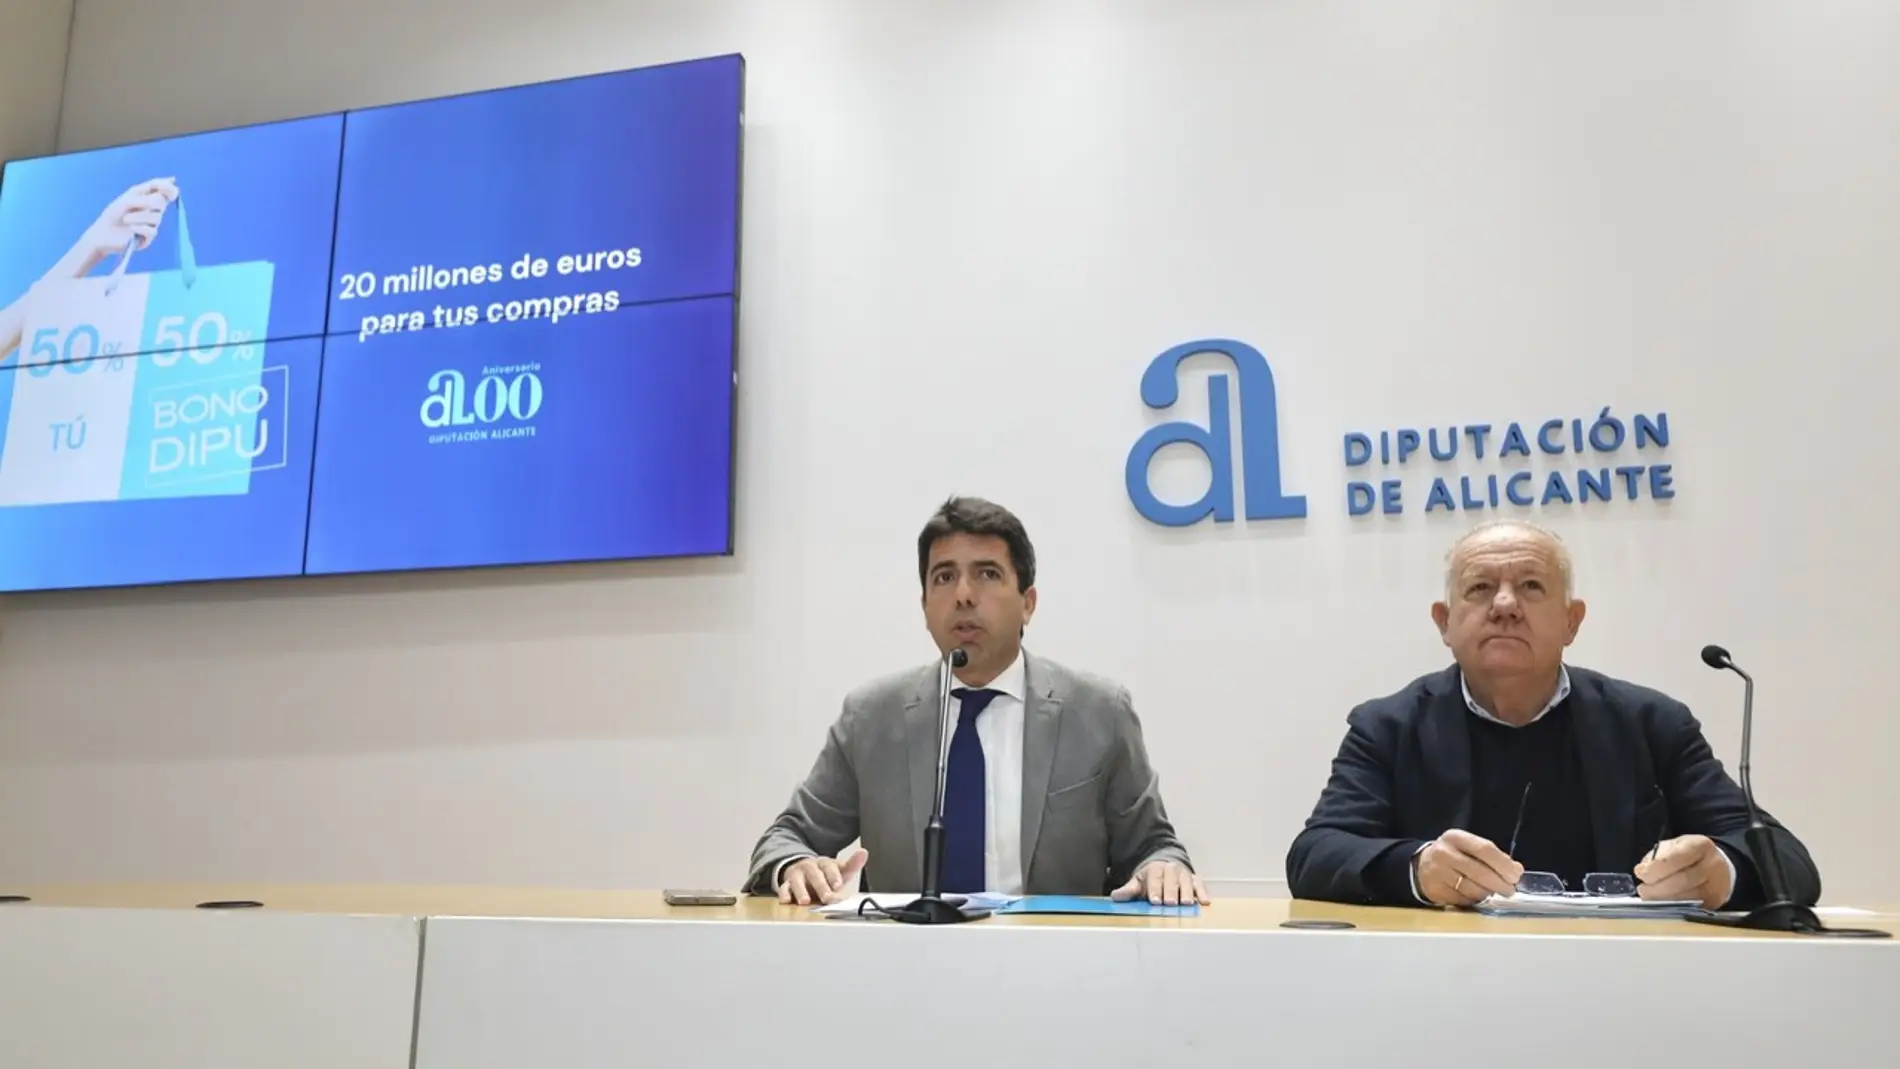 La Diputación de Alicante destina este año más de cuatro millones de euros a bonos consumo en las comarcas del Vinalopó.